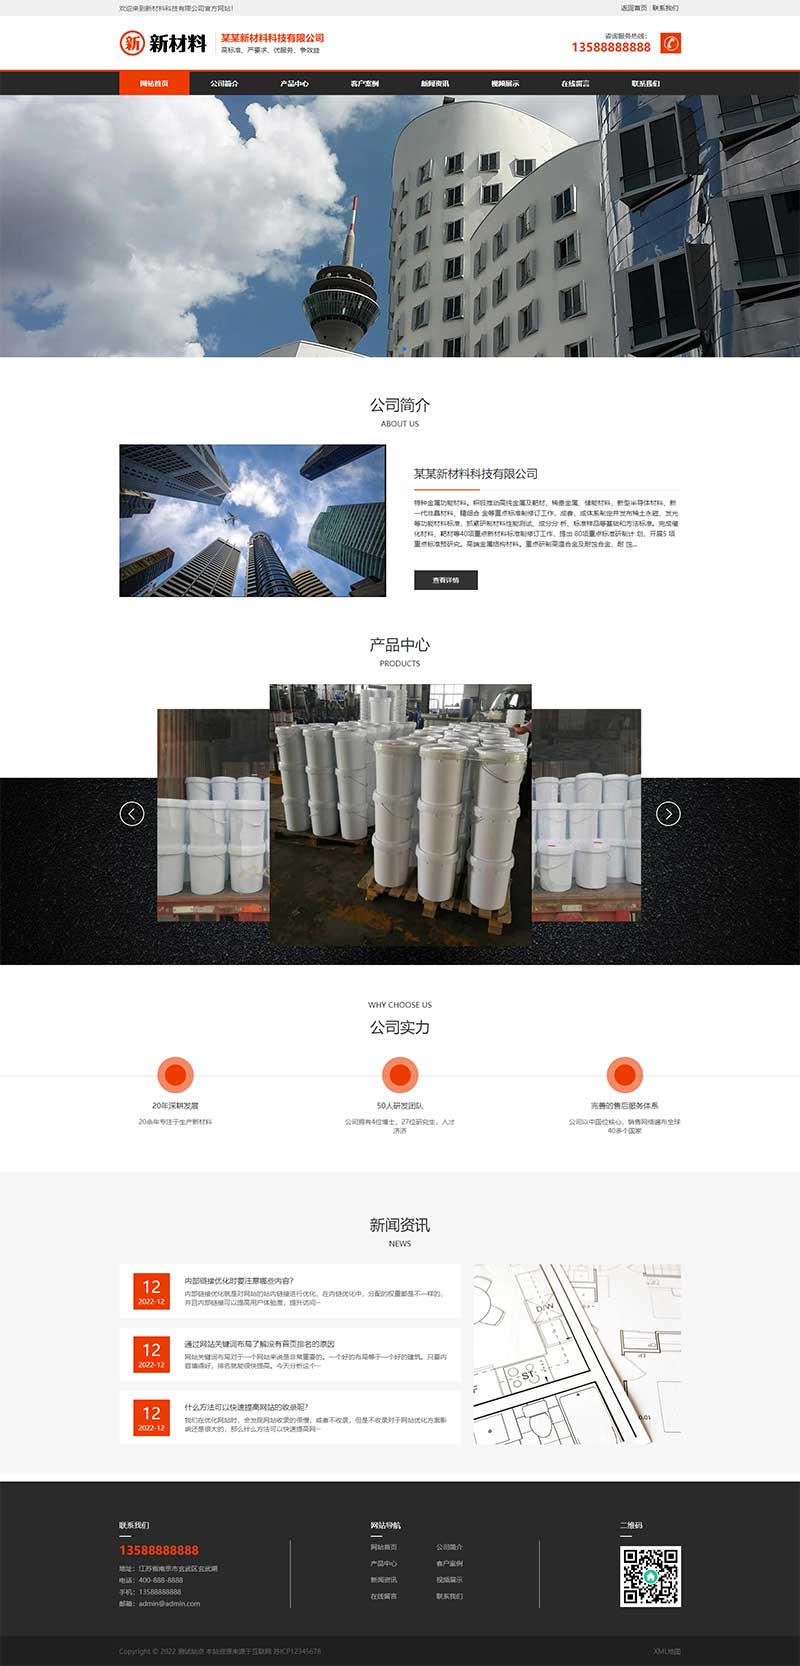 (PC+WAP)简约风格环保建筑装饰材料企业网站电脑端模板展示图片